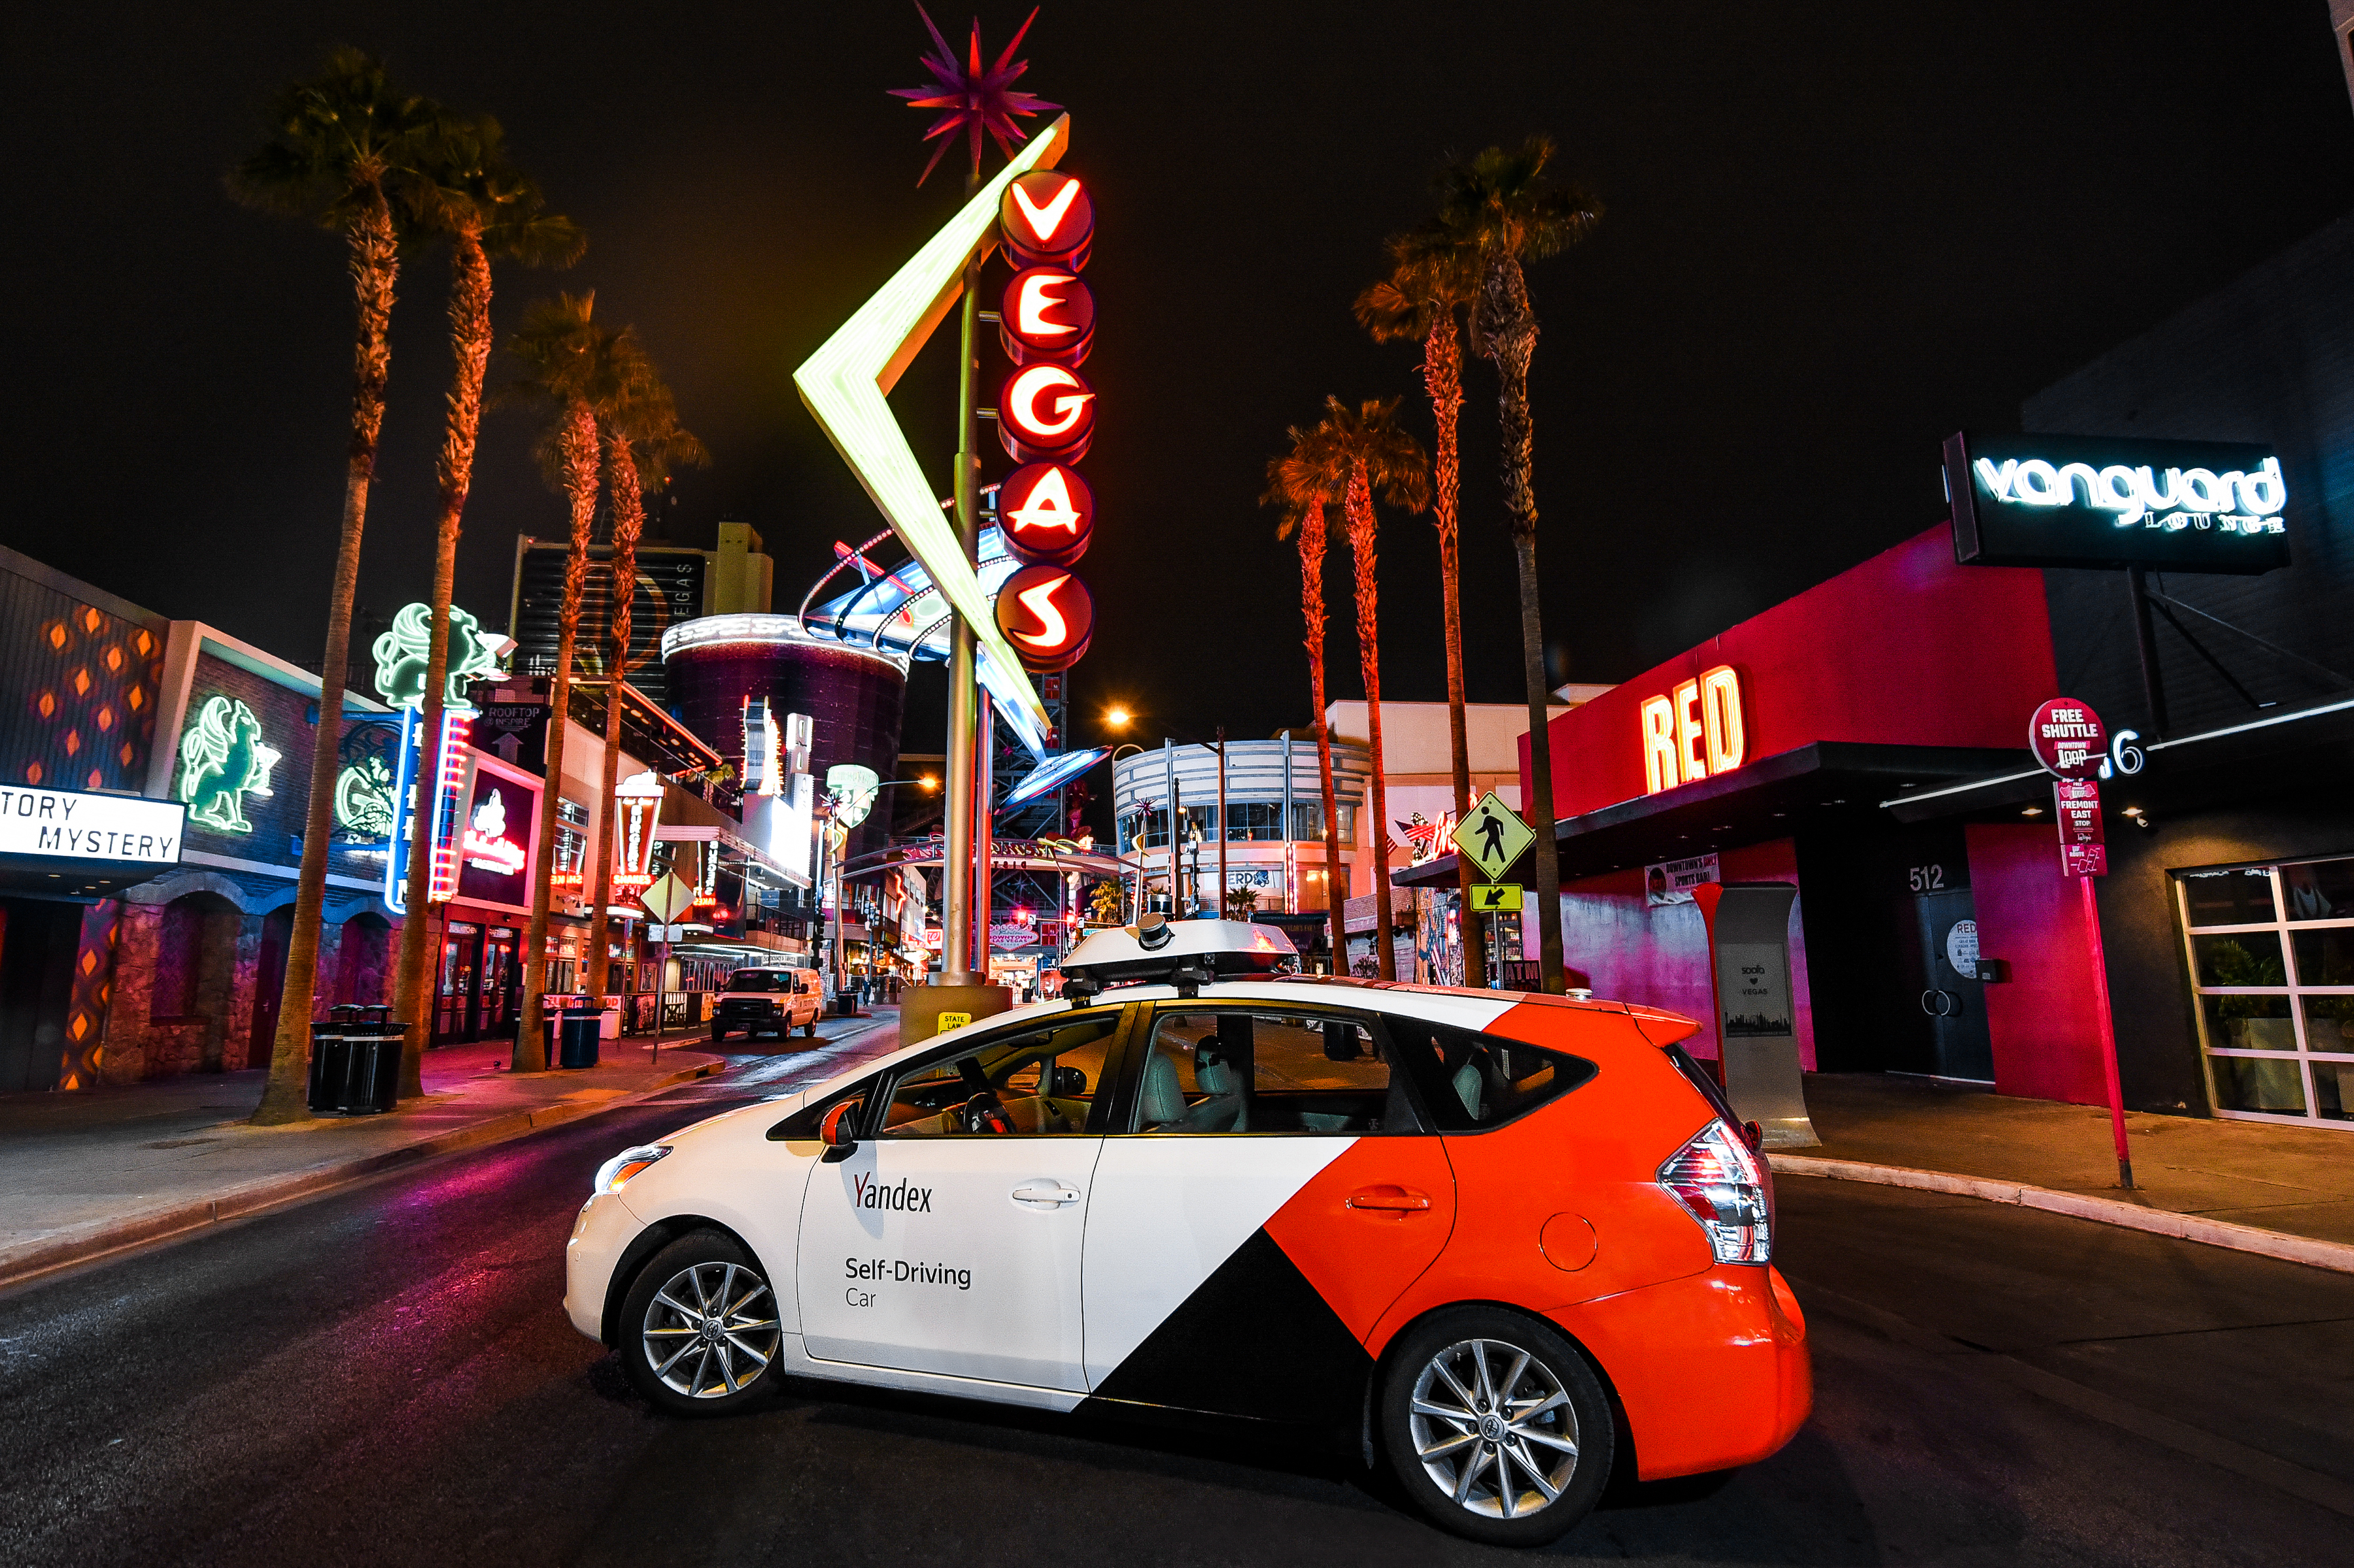 Yandex self-driving car in Downtown Las Vegas.